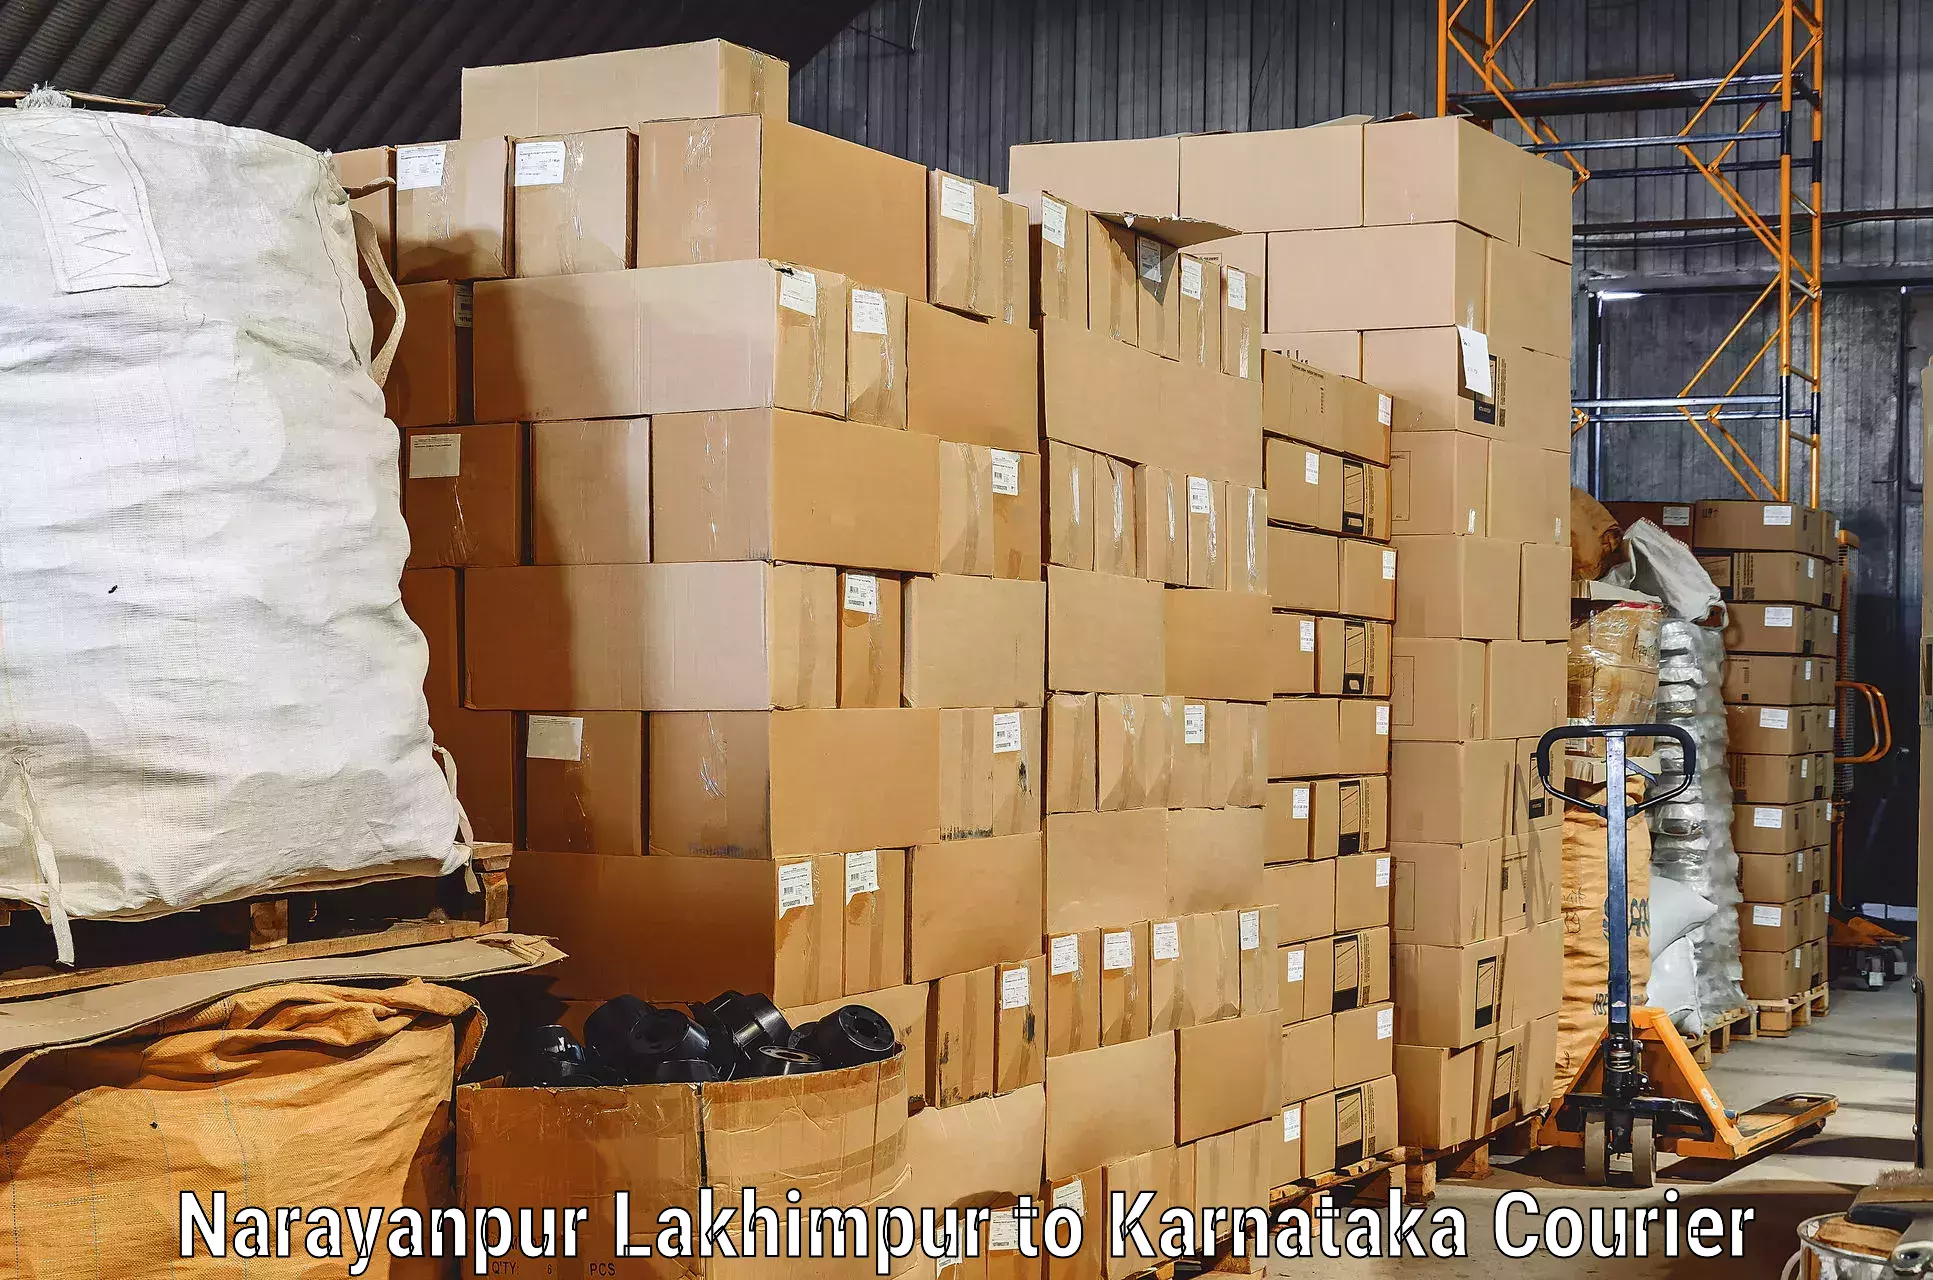 Furniture moving service Narayanpur Lakhimpur to Mangalore Port